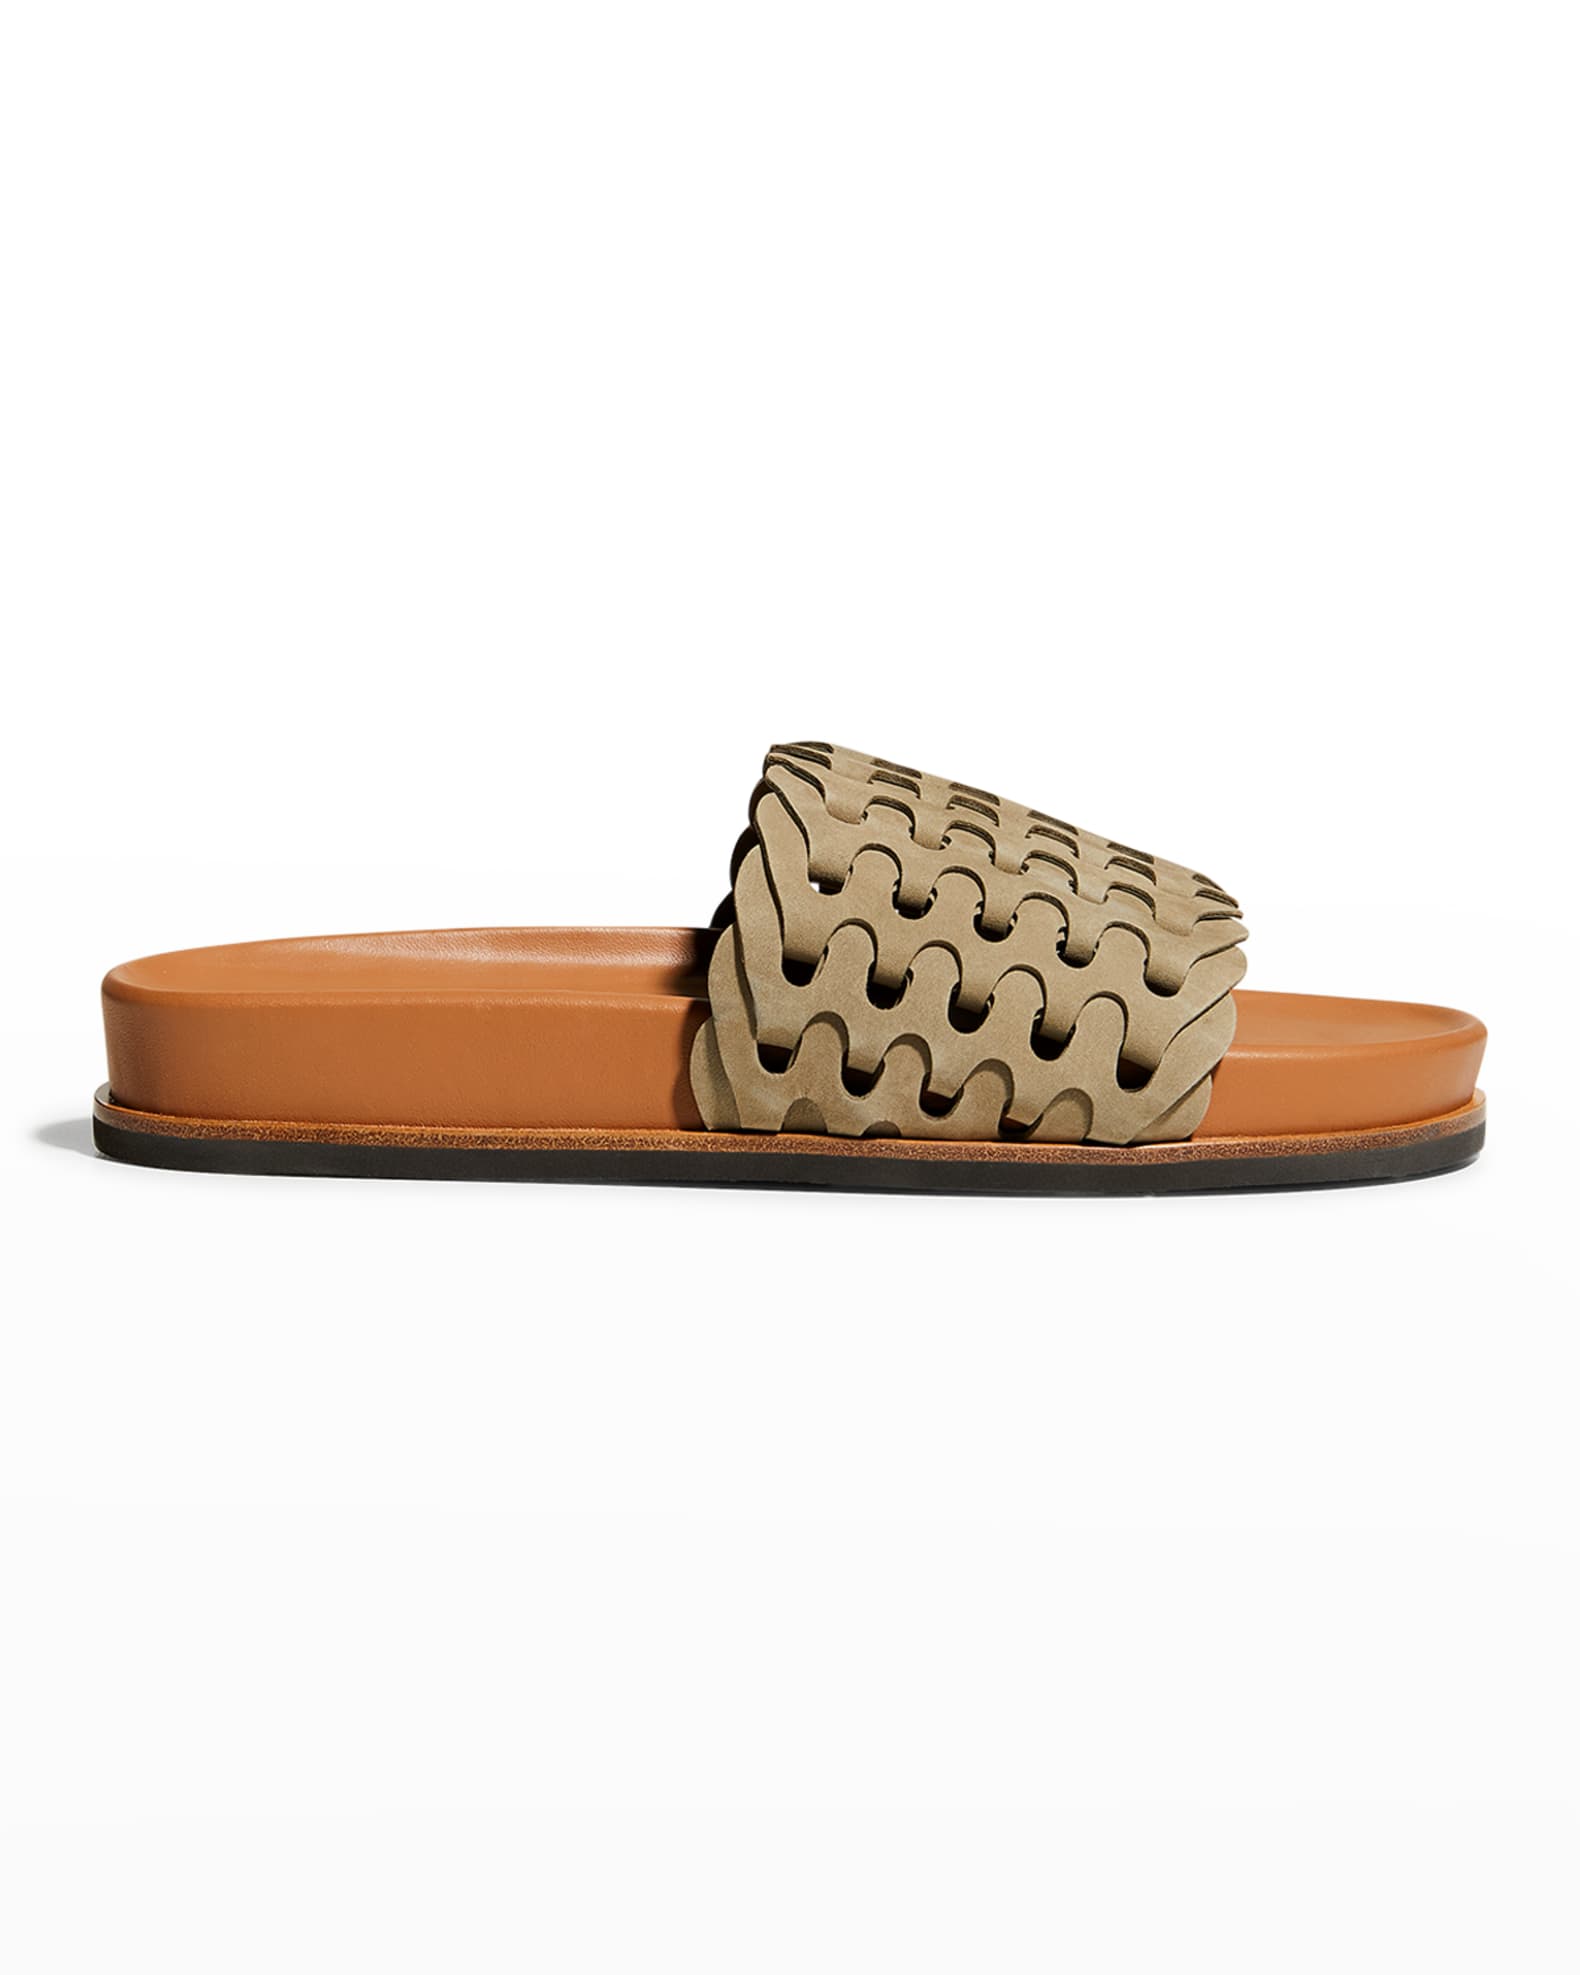 Rag & Bone Bailey Woven Suede Slide Sandals | Neiman Marcus